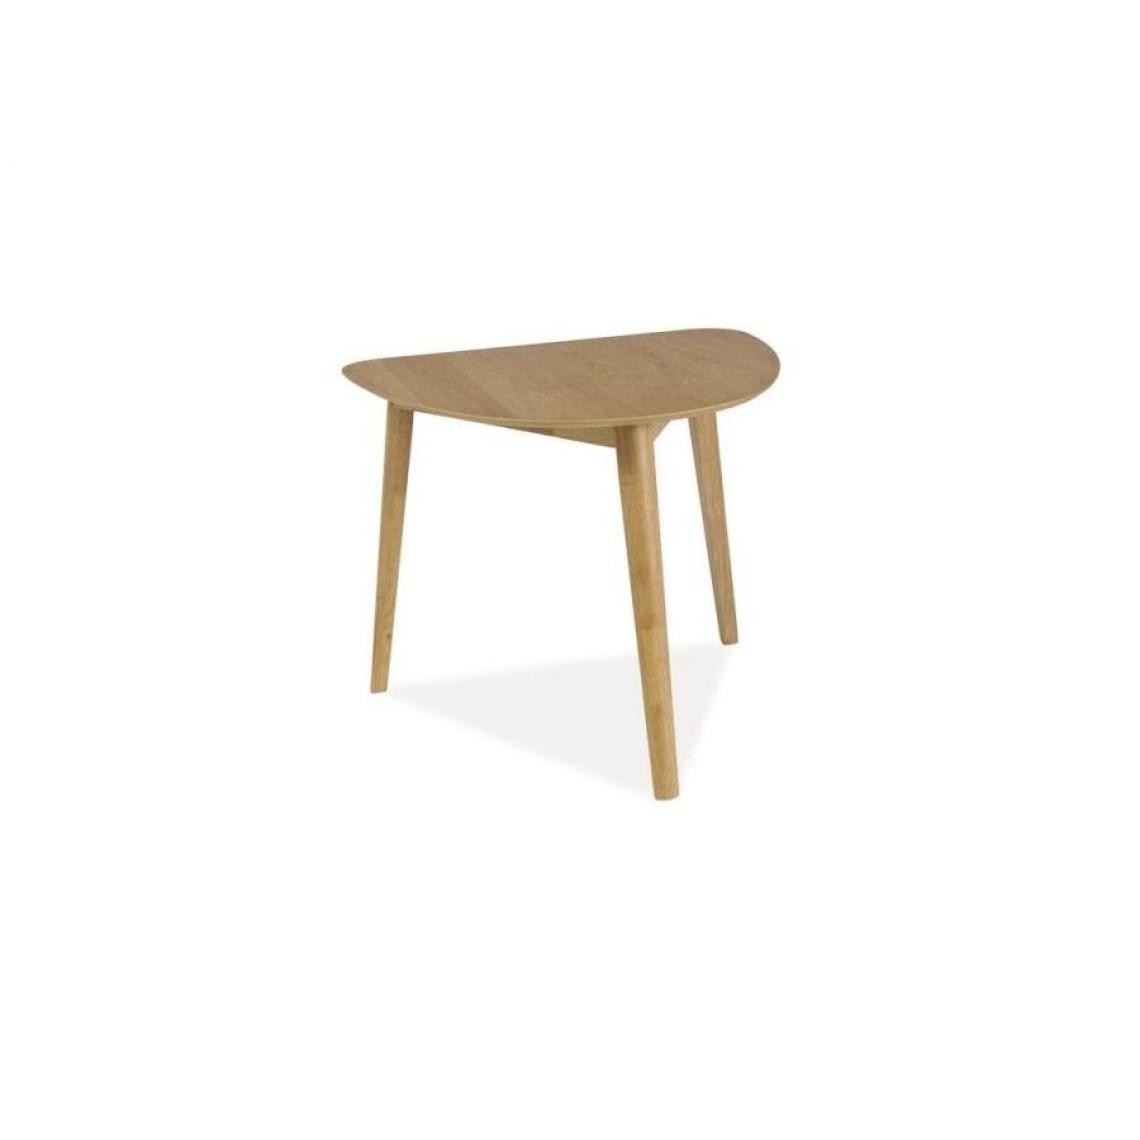 Hucoco - KERL - Table moderne avec plateau triangulaire stye scandinave - 80x90x75 cm - Plateau en MDF - Piètement en bois - Chêne - Tables à manger